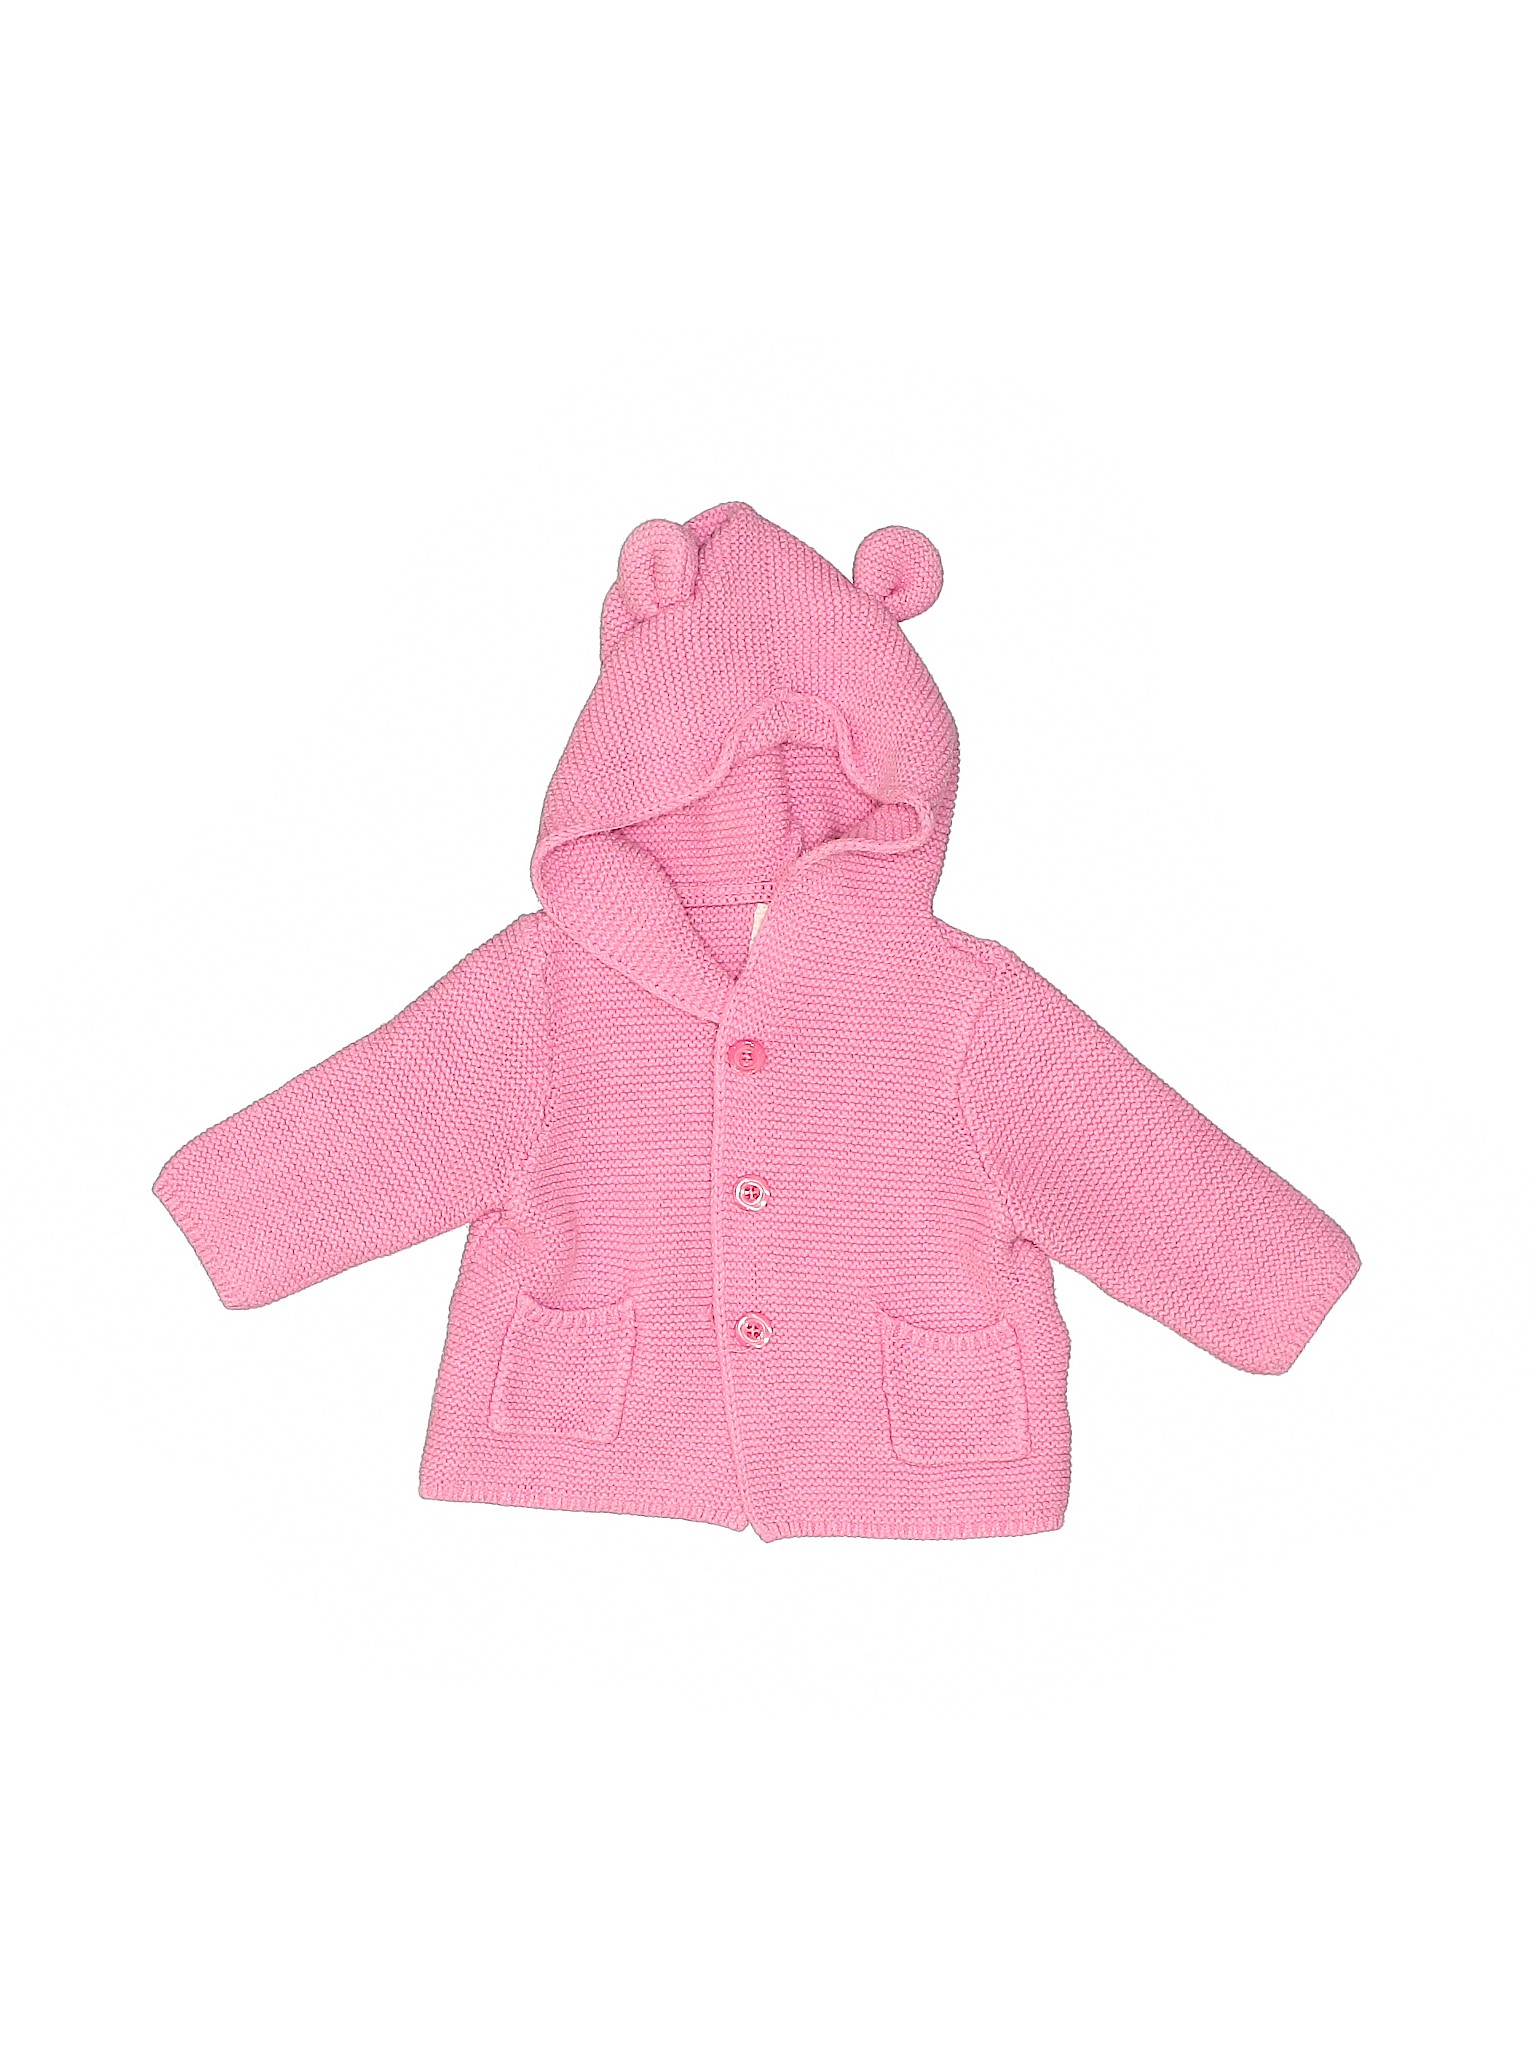 Baby Gap Girls Pink Jacket 3-6 Months | eBay